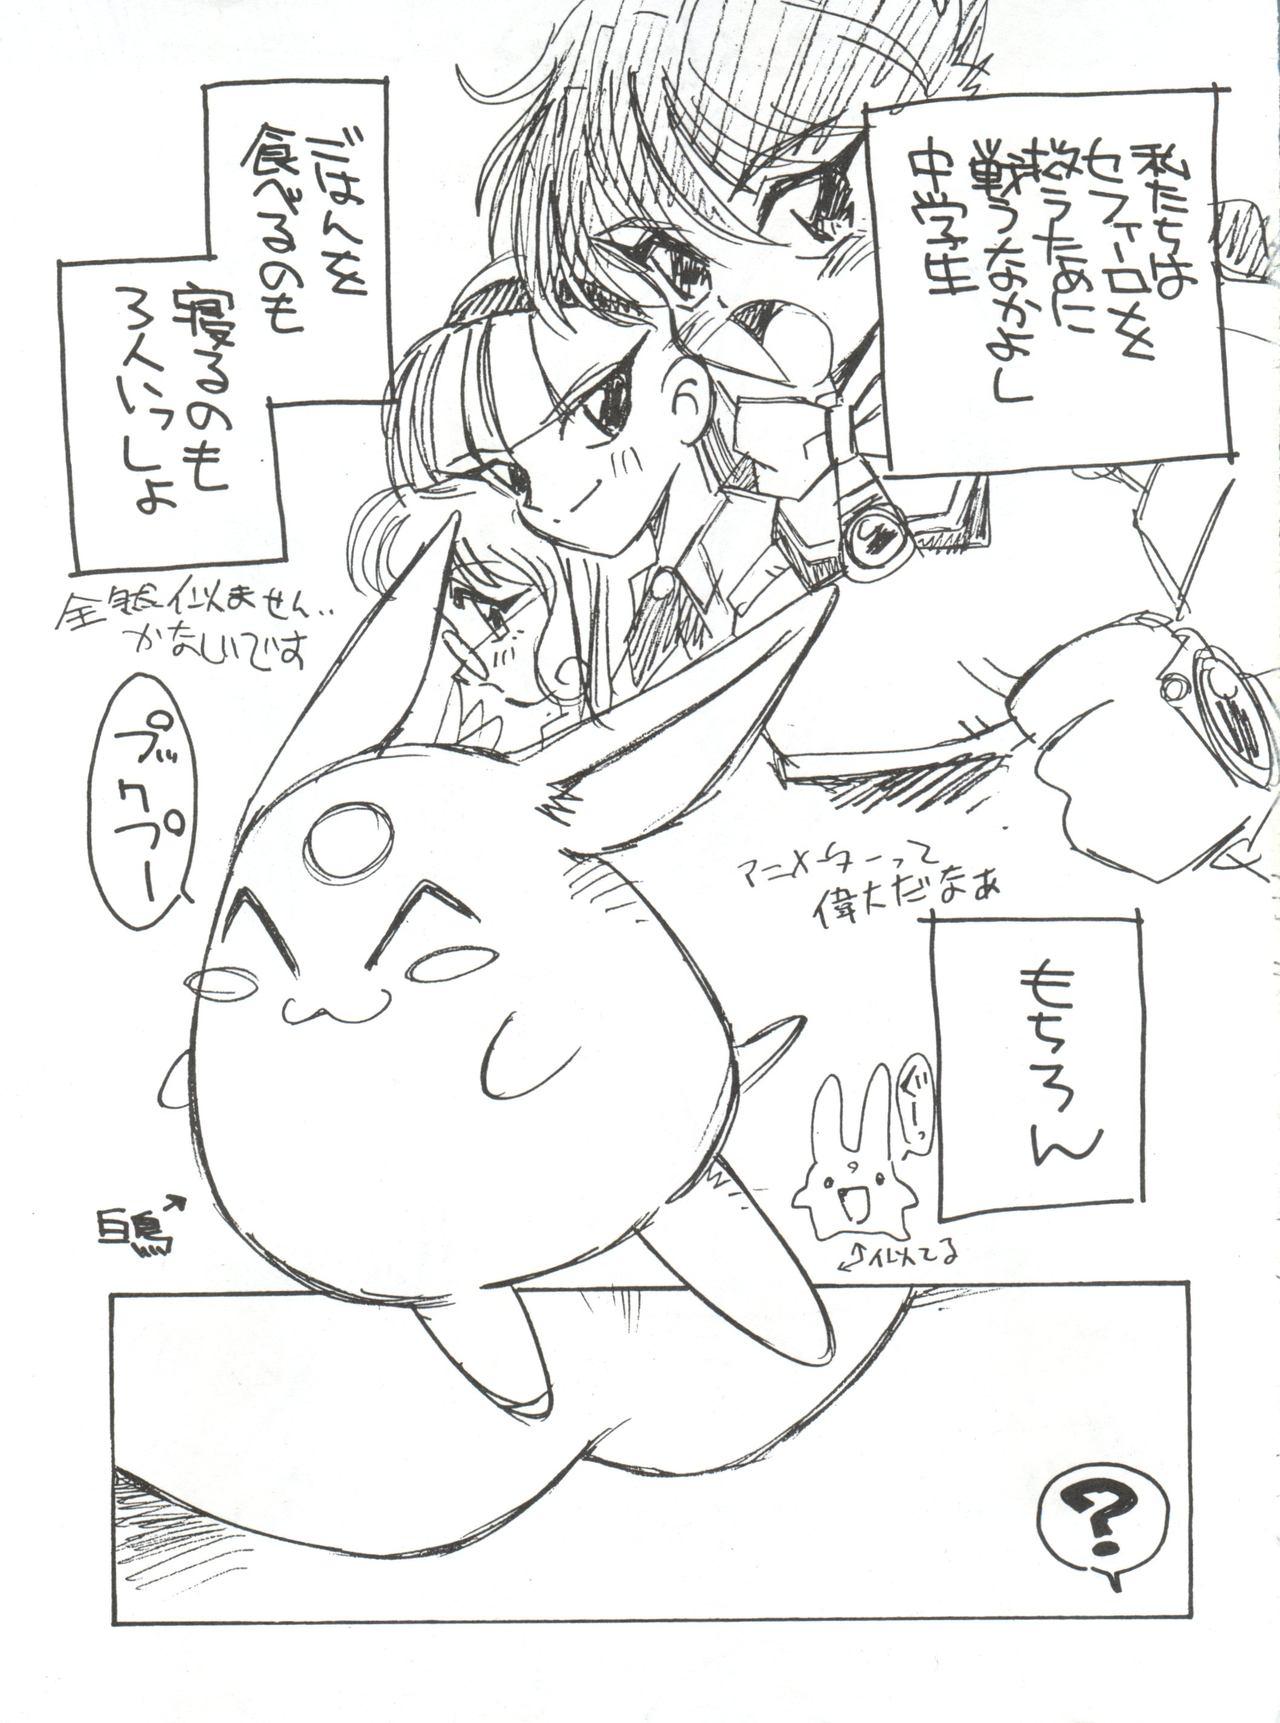 Fantasy Zokuzoku Sanbiki ga Kiru! Shiratori wa Seifu no Inu - Magic knight rayearth Monster - Page 5